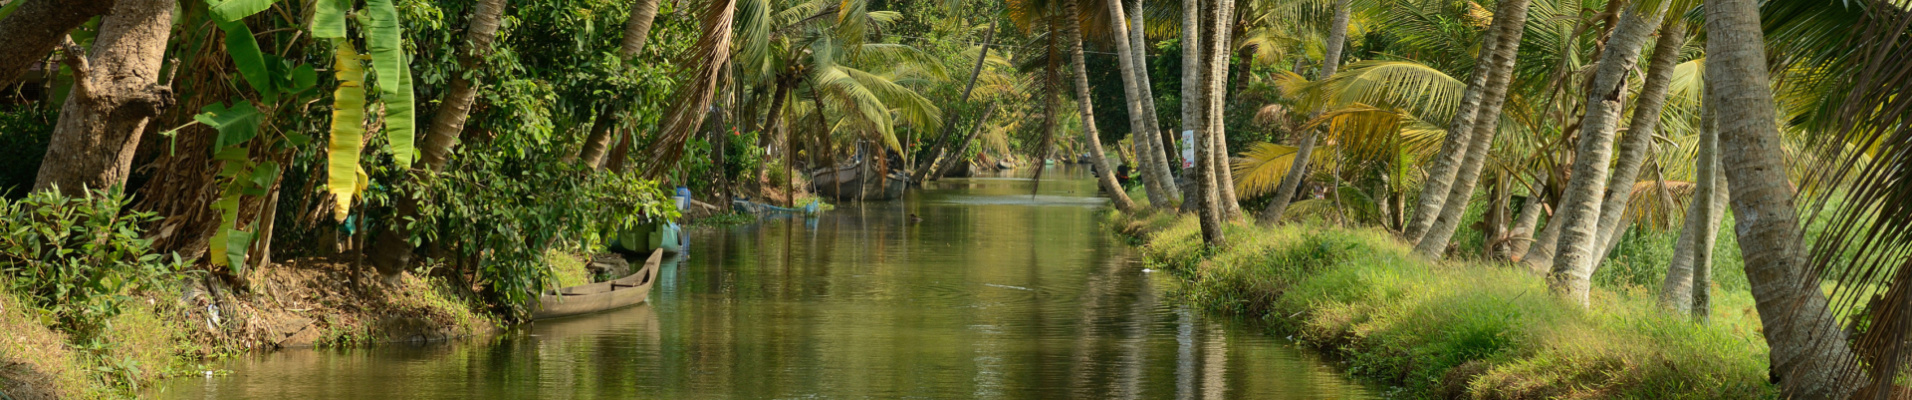 backwater-kerala-arbres